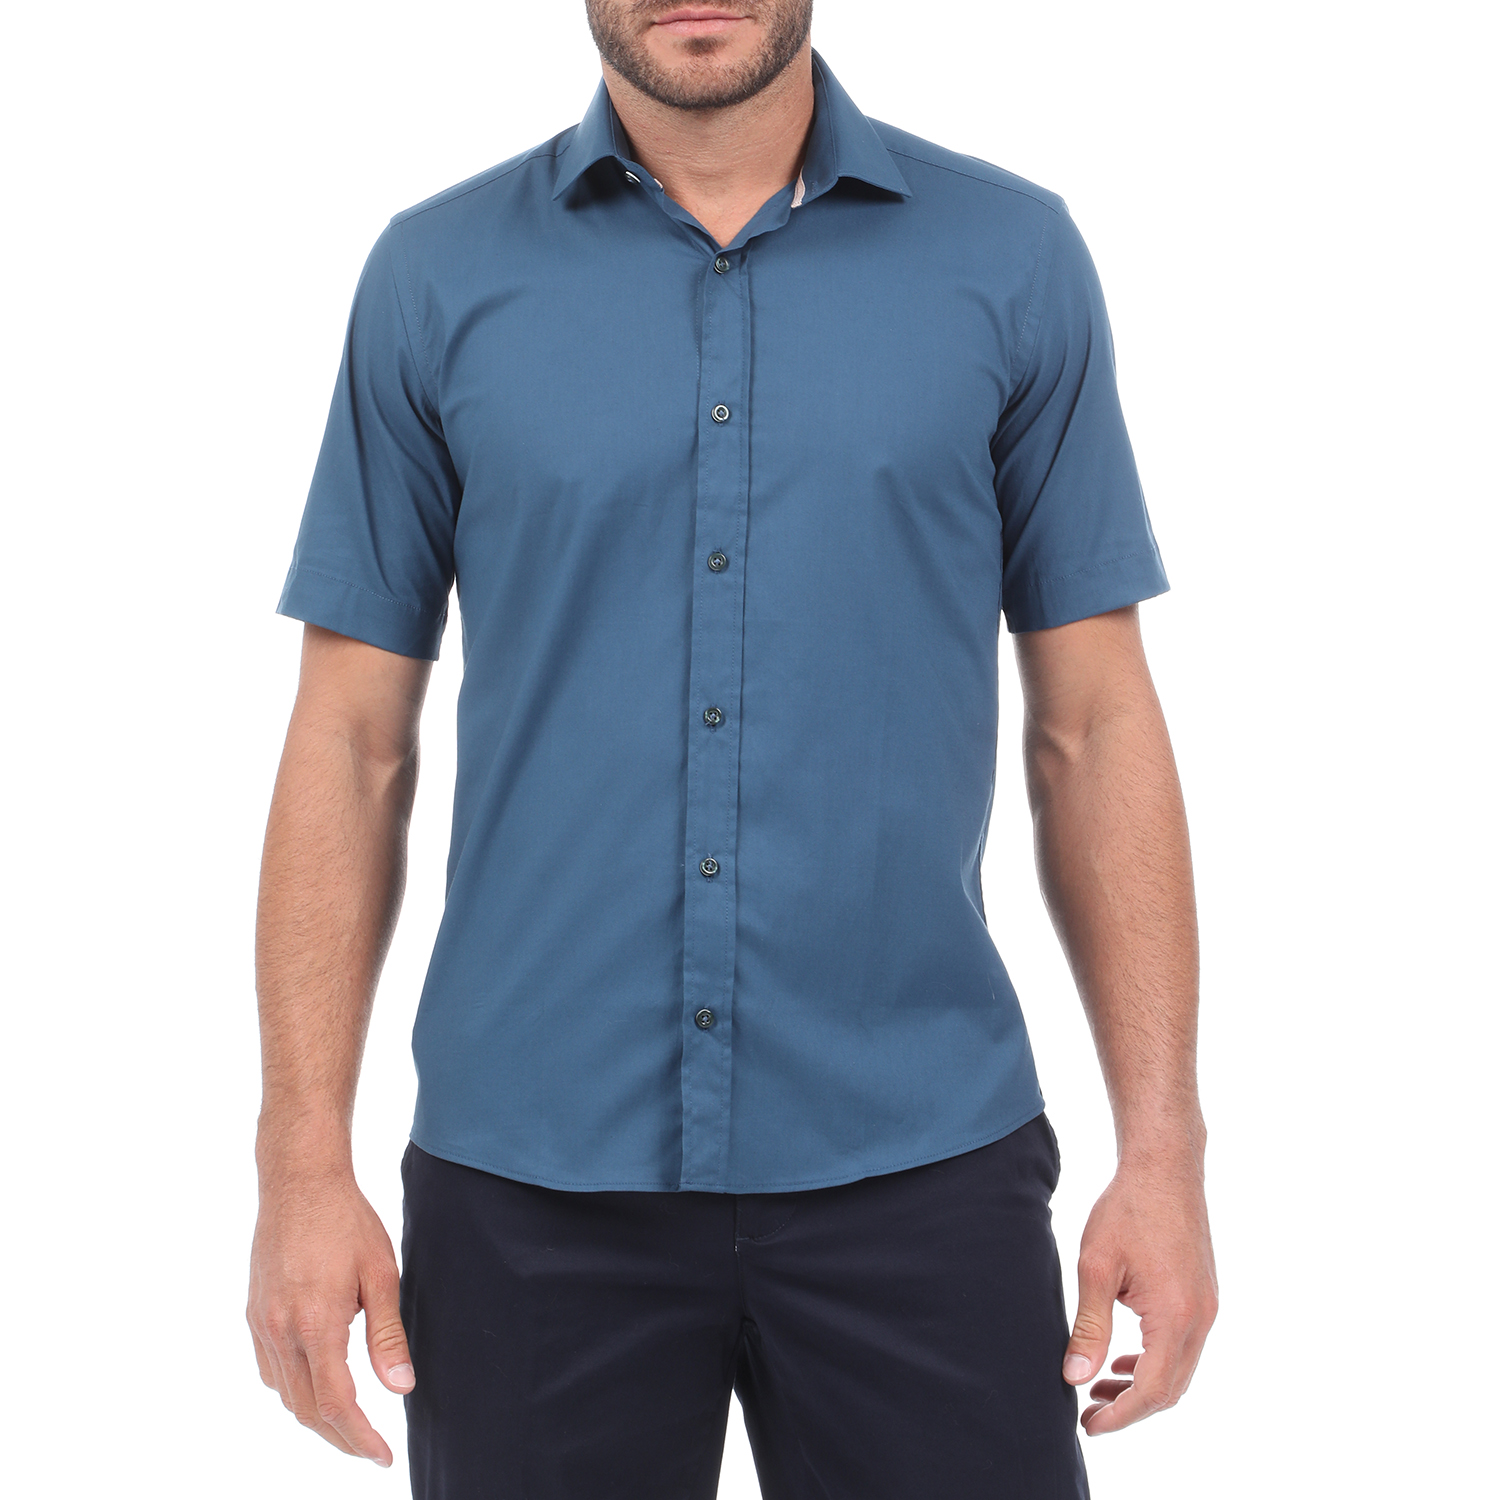 Ανδρικά/Ρούχα/Πουκάμισα/Κοντομάνικα-Αμάνικα MARTIN & CO - Ανδρικό πουκάμισο MARTIN & CO SLIM FIT μπλε